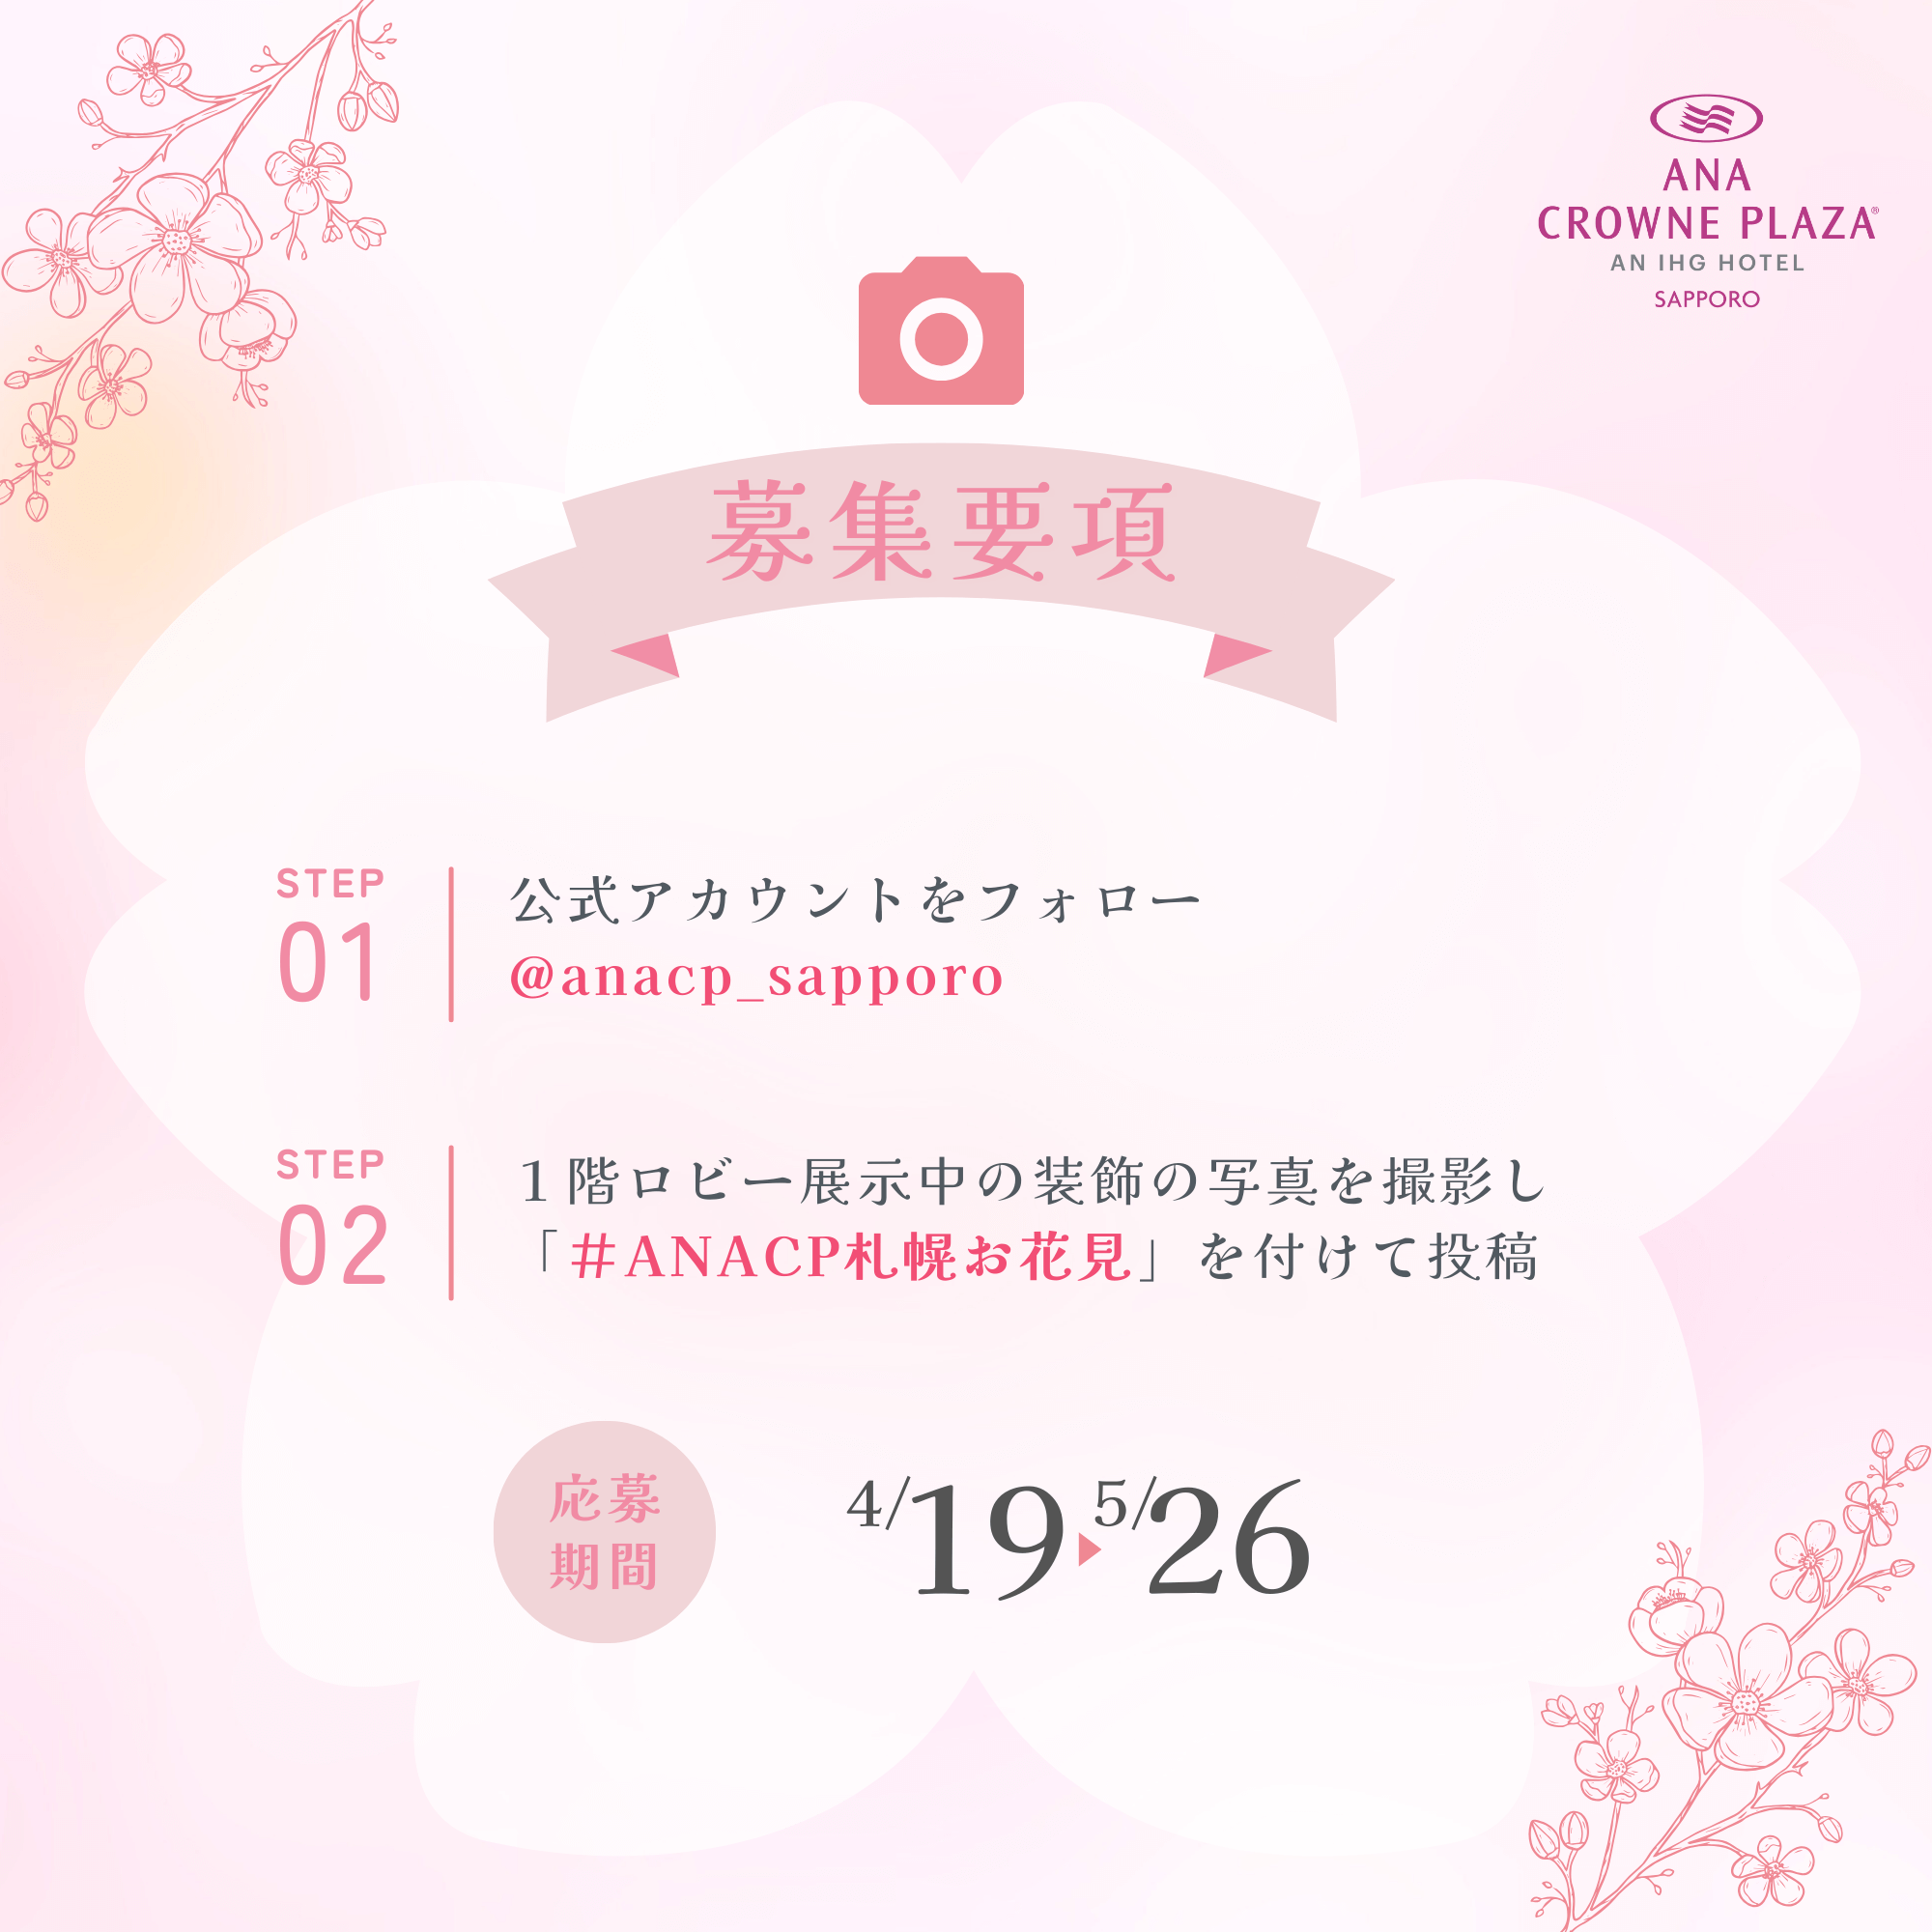 ANAクラウンプラザホテル札幌の『桜フォトコンテスト』-X